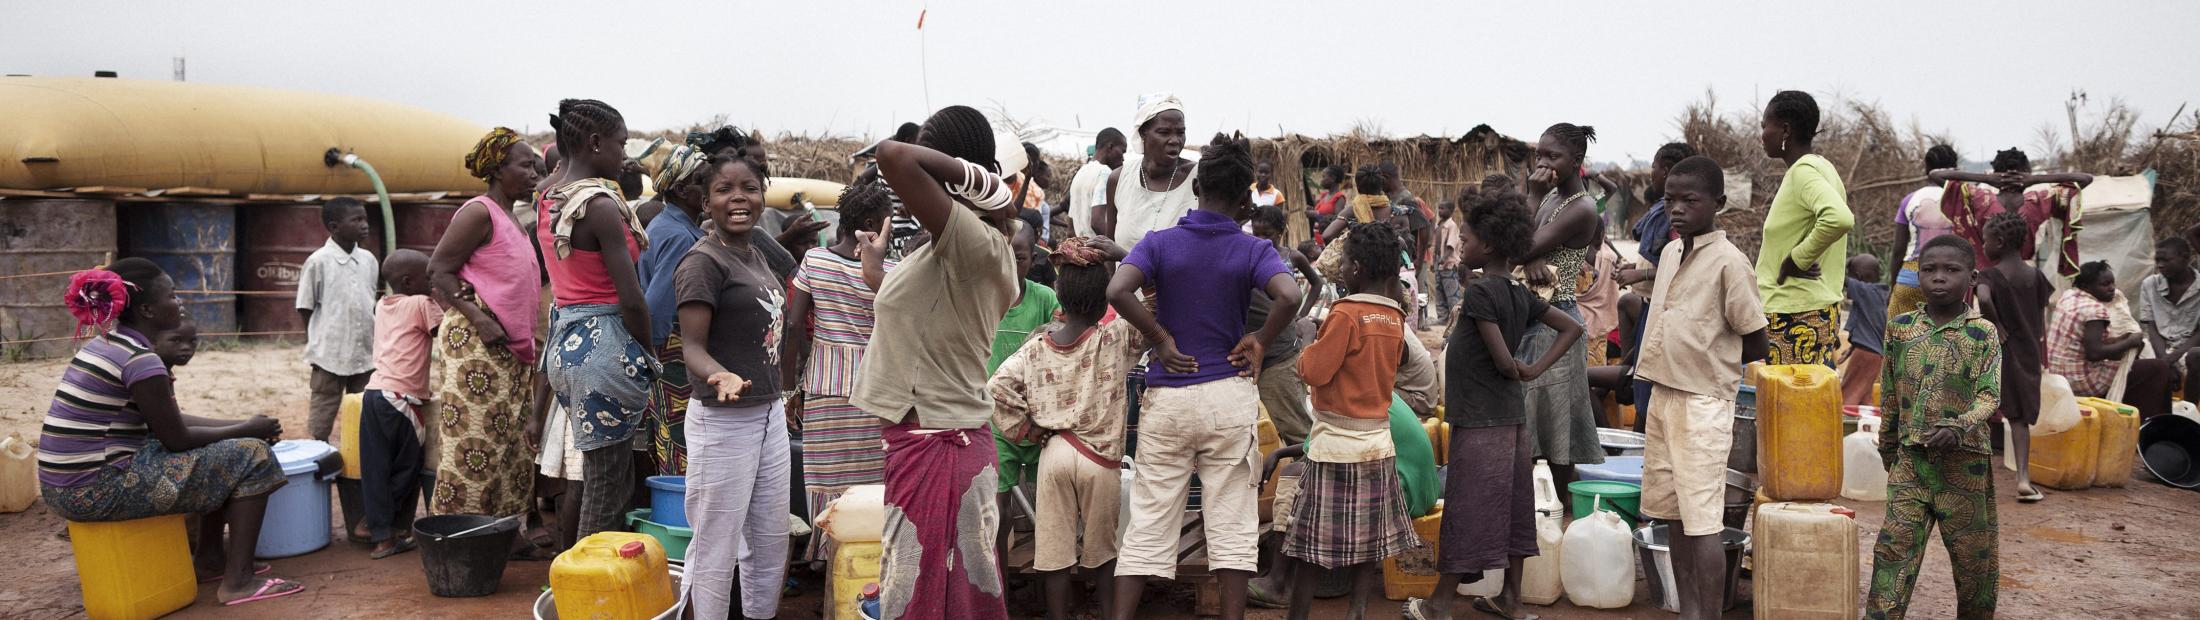 Nuevo desplazamiento de población en la República Centroafricana tras el recrudecimiento del conflicto en el centro-norte